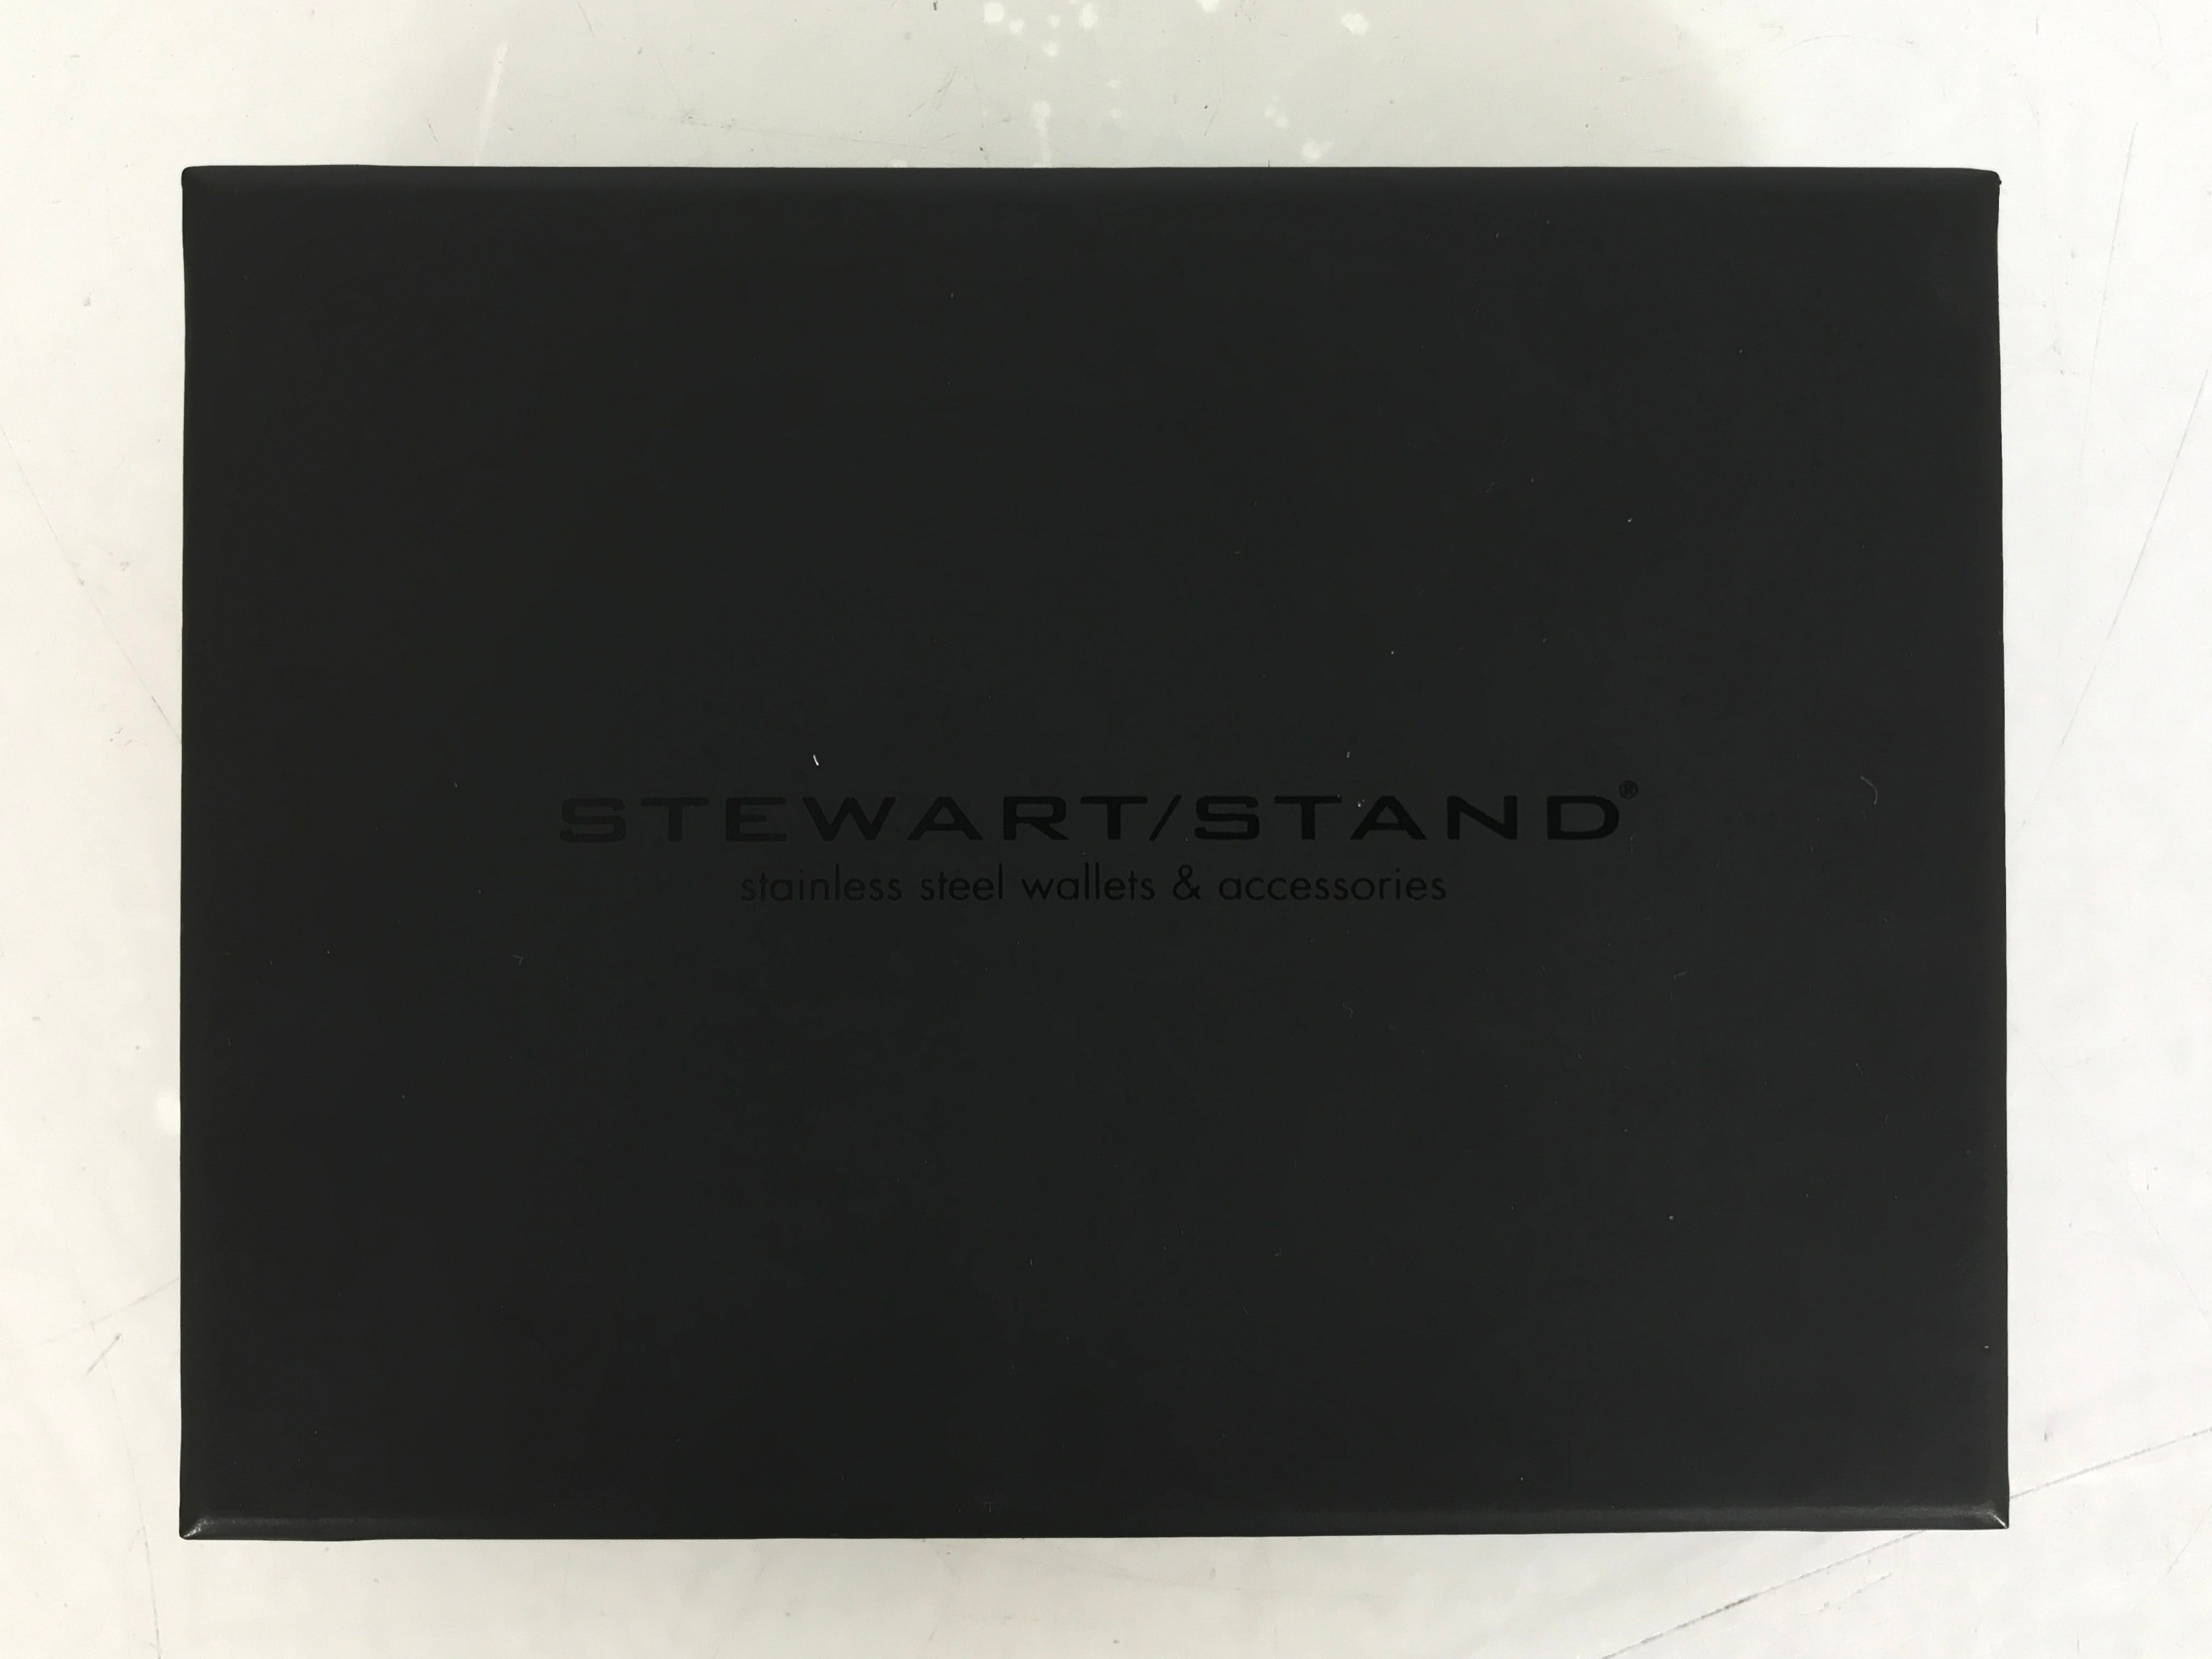 Stewart Stand Yellow Card Case